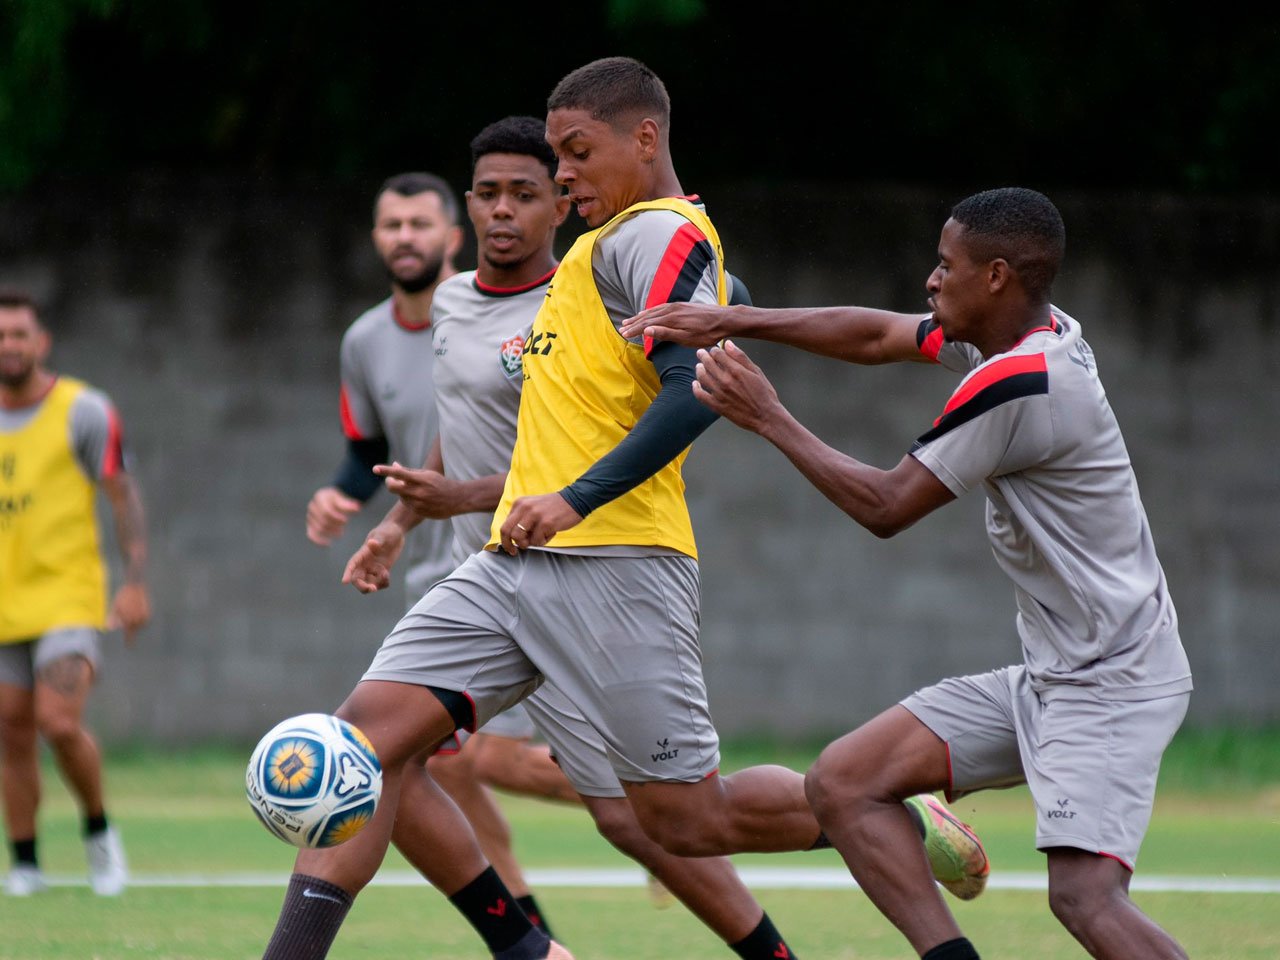 Com Treino Intenso Em Dois Turnos, Vitória Se Prepara Para Duelo Na Copa Do Nordeste